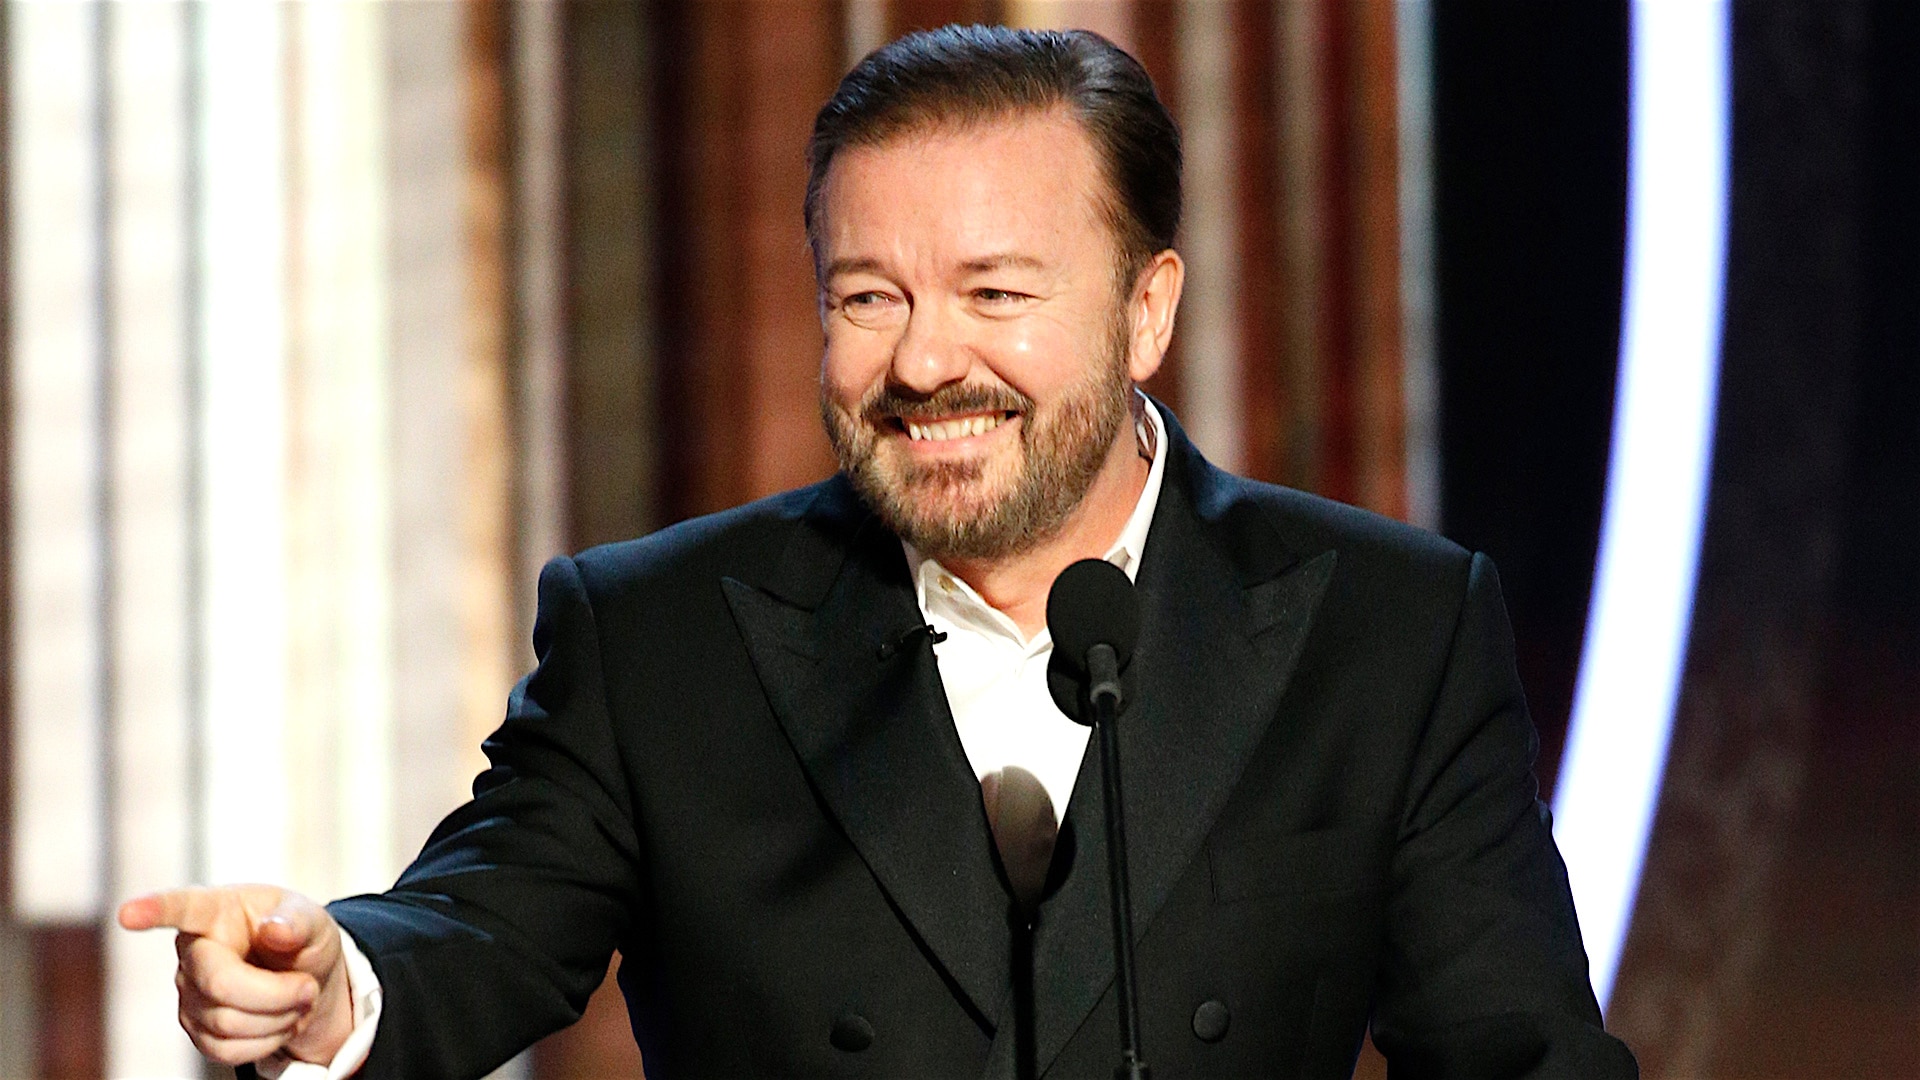 Watch The Golden Globe Awards Highlight Ricky Gervais' Golden Globes